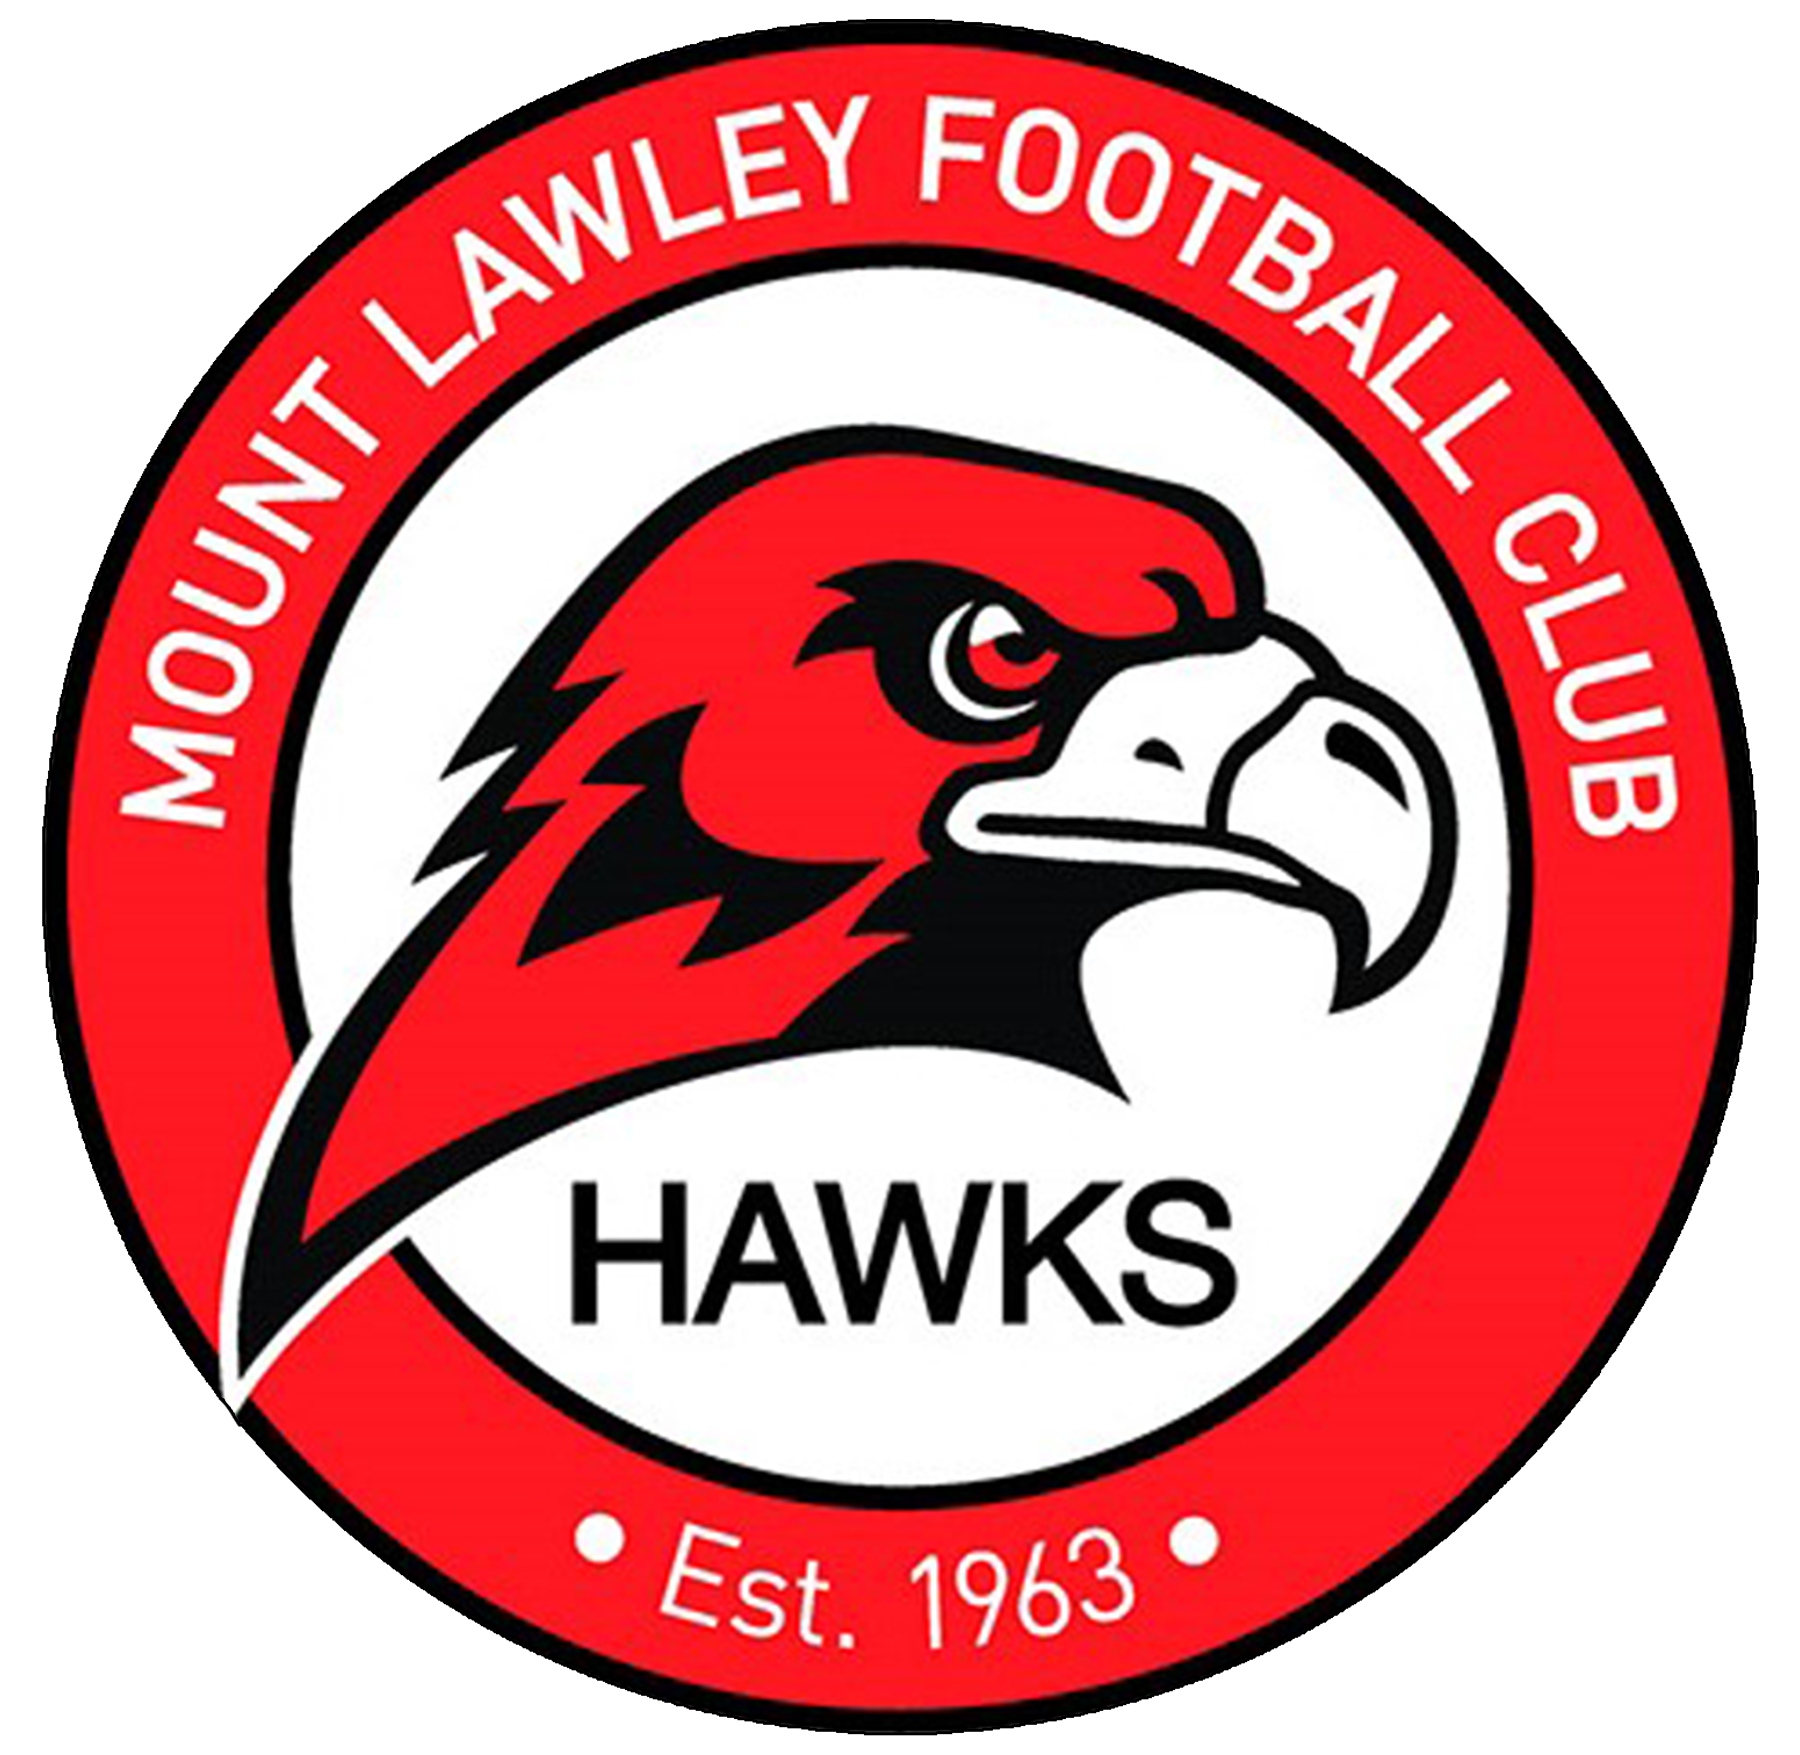 Mount Lawley Football Club